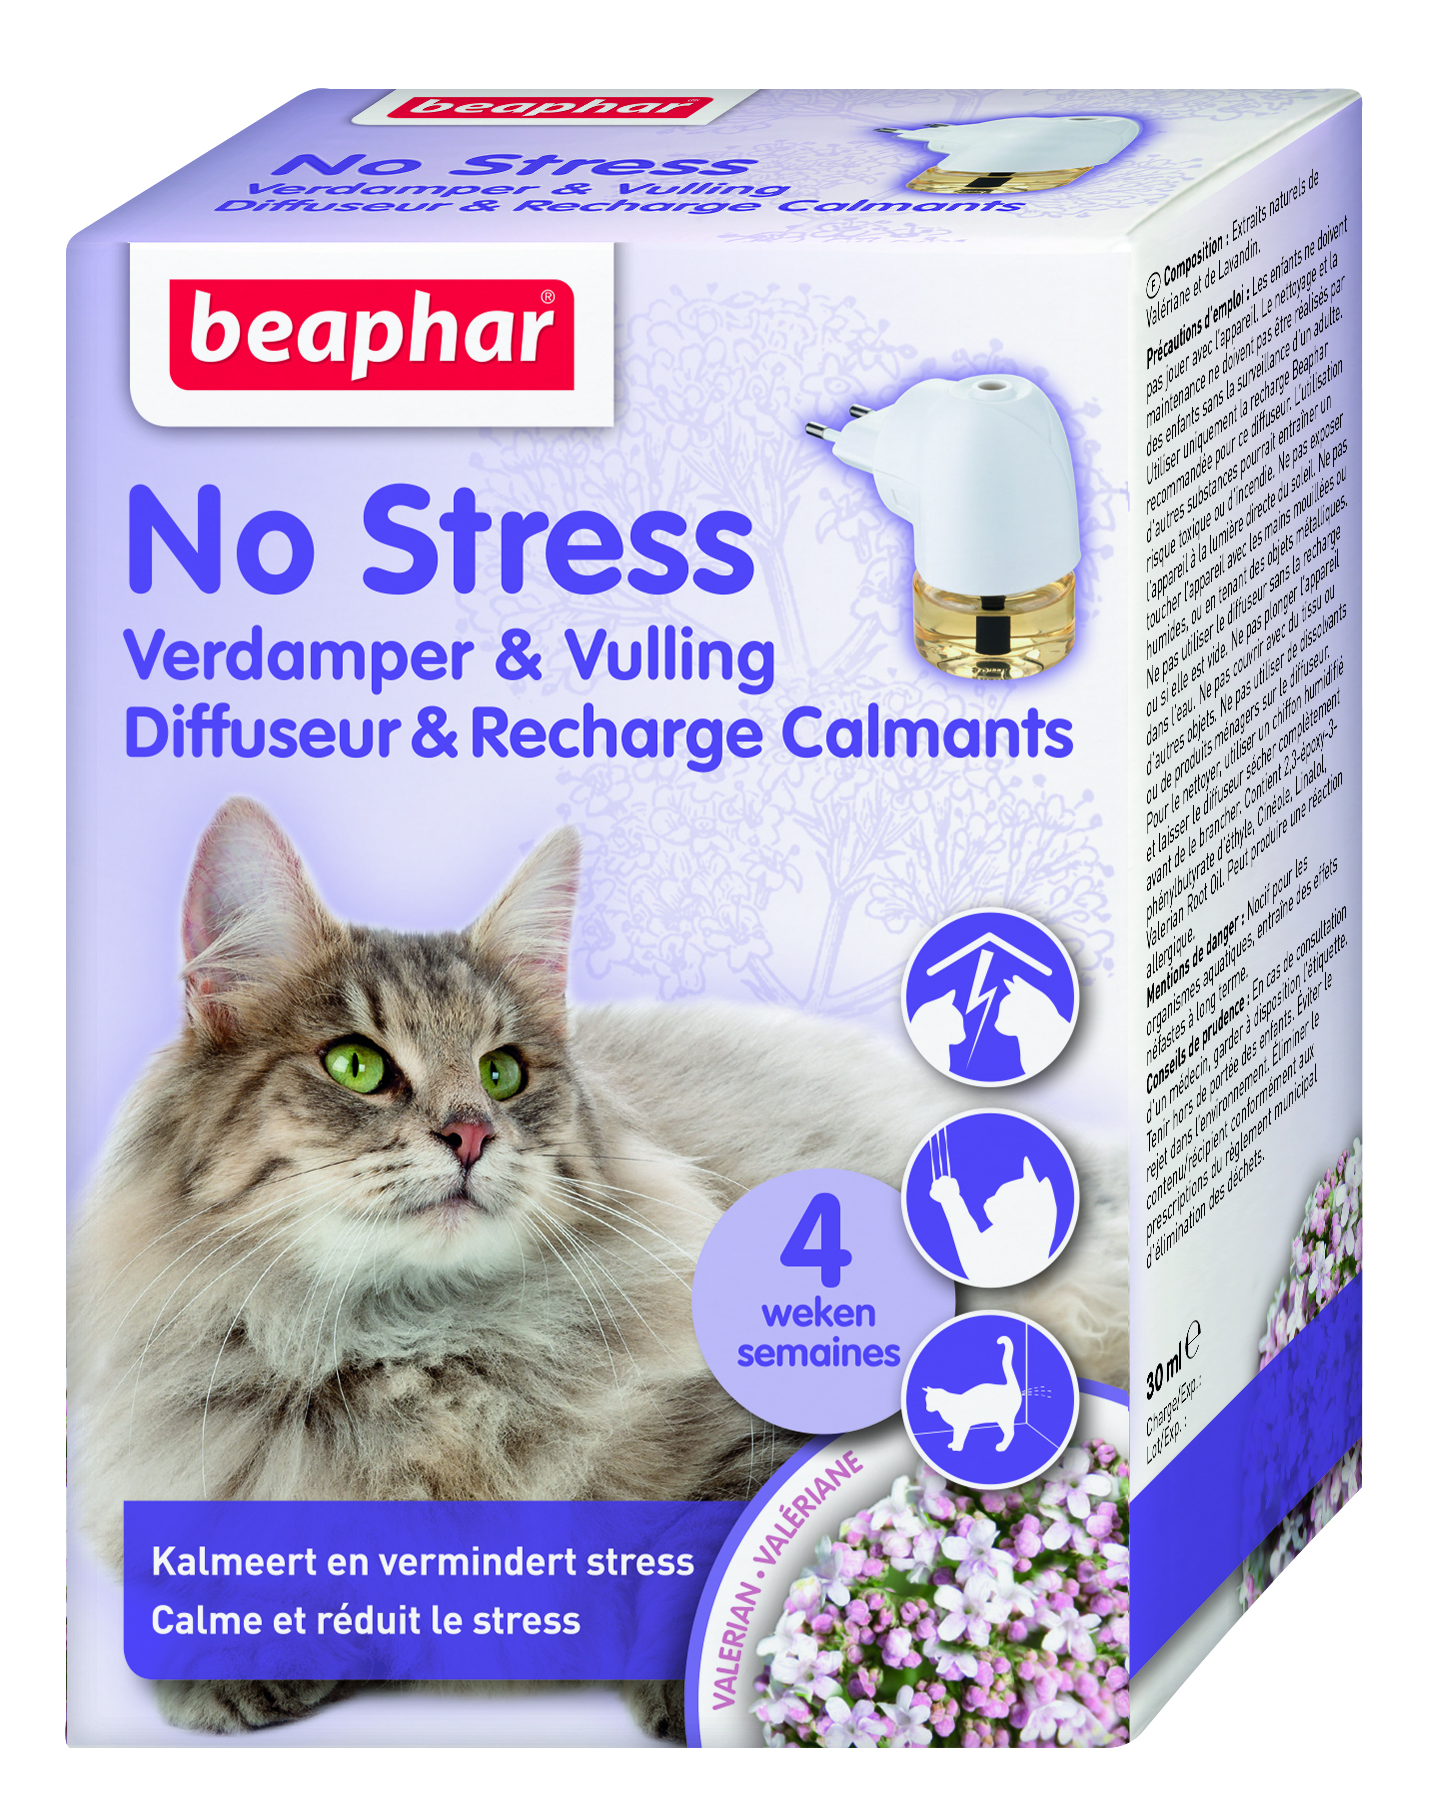 Beaphar No Stress набор: диффузор со сменным блоком для кошек 30 мл